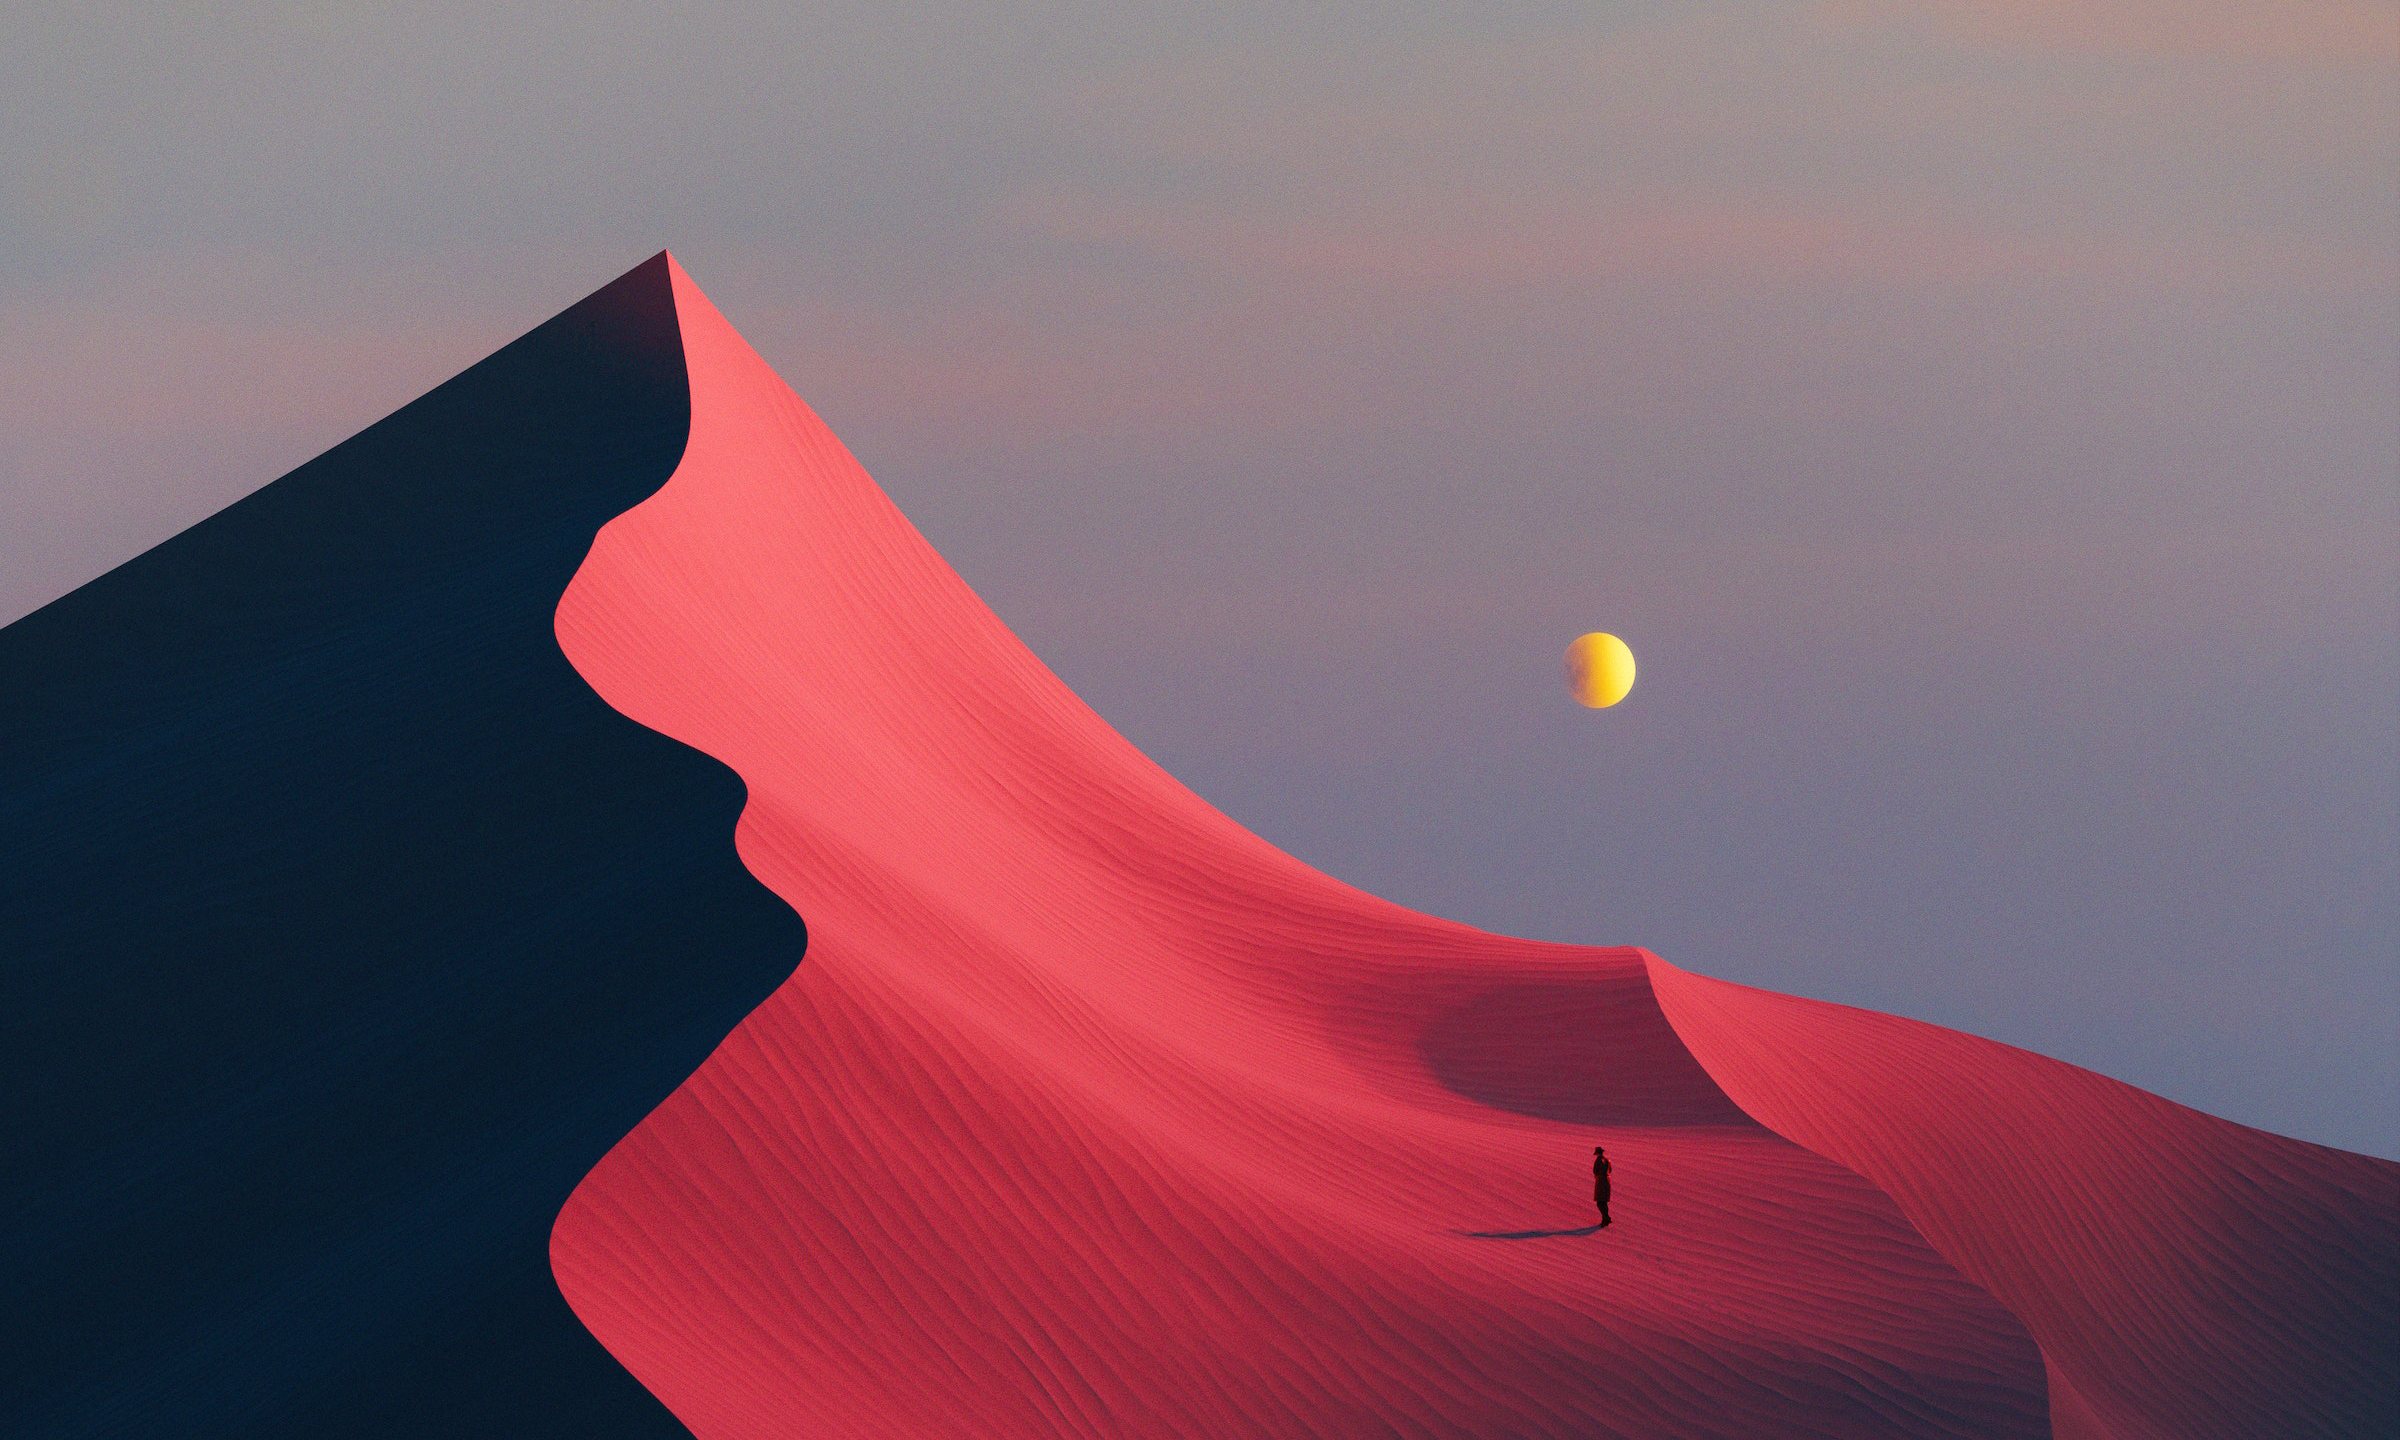 General 2400x1440 digital art artwork illustration dunes desert landscape sand nature simple background minimalism